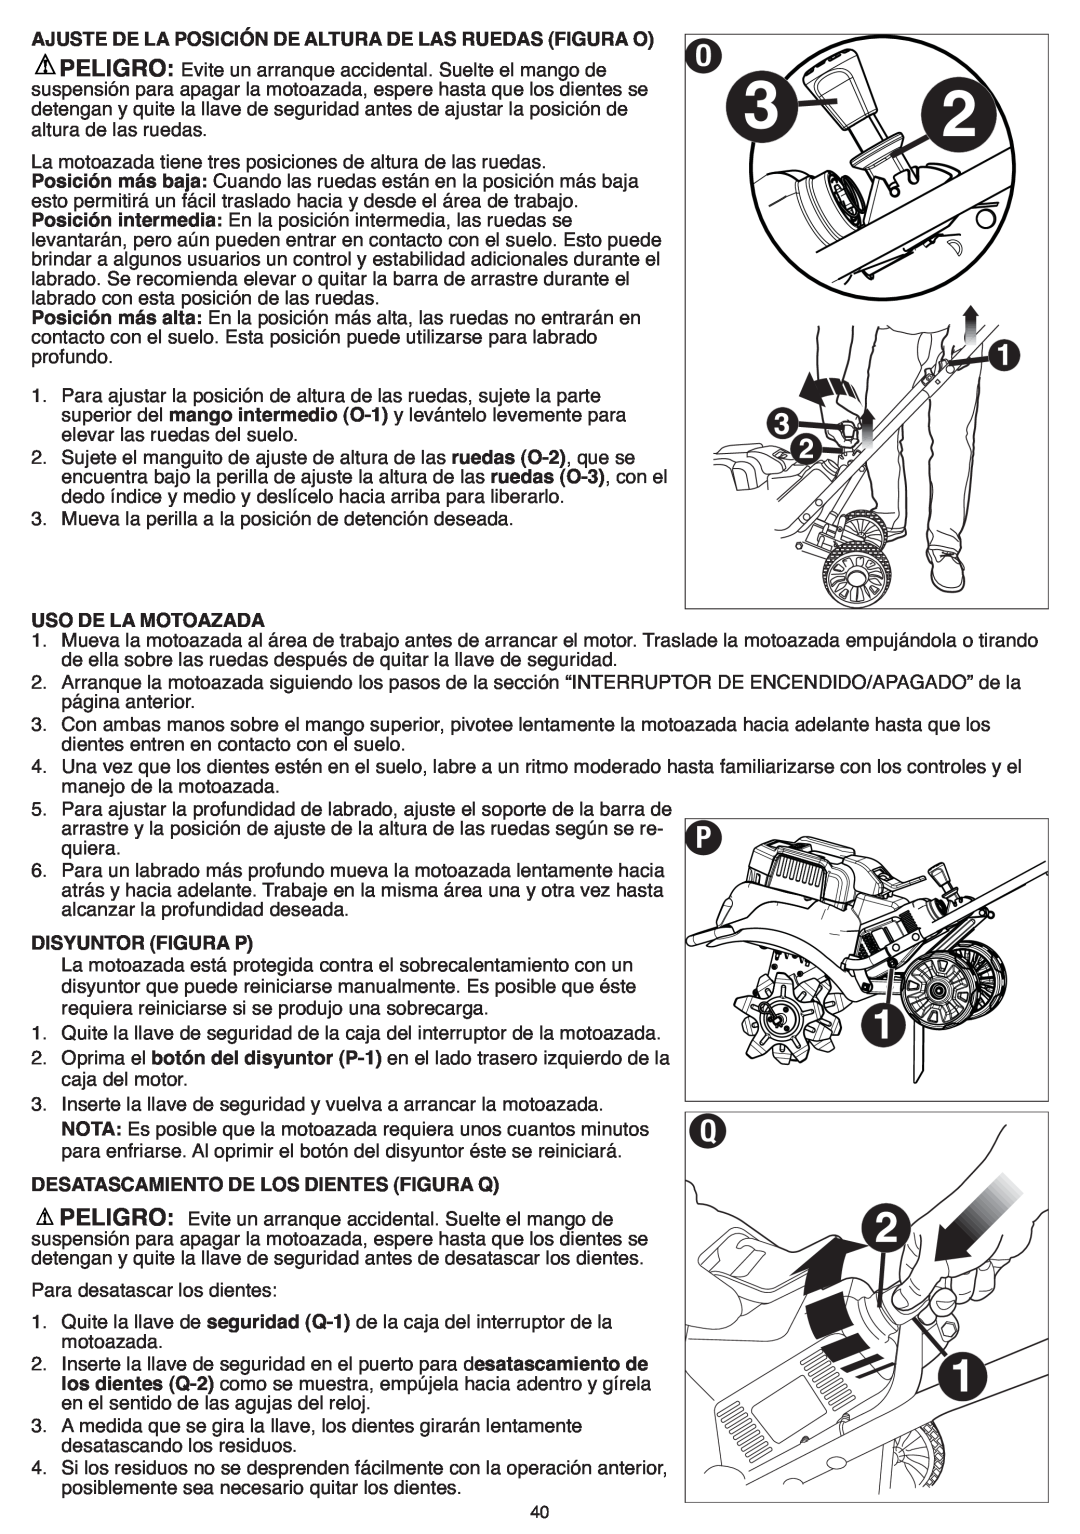 Black & Decker CTL36 instruction manual Uso De La Motoazada, Disyuntor Figura P, Desatascamiento De Los Dientes Figura Q 